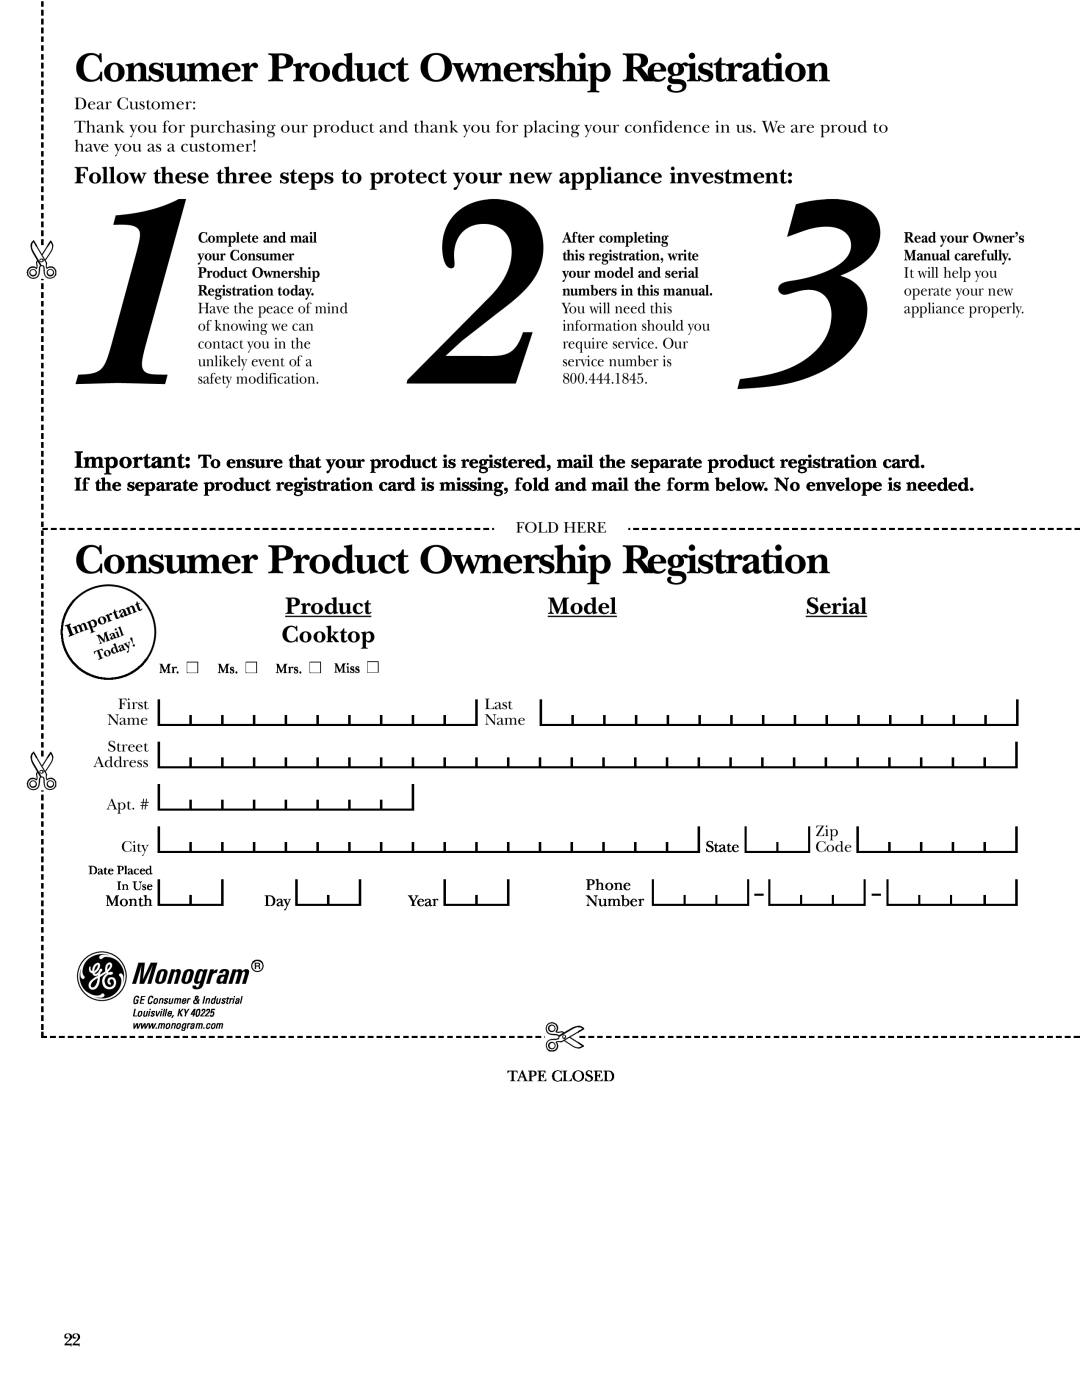 GE ZEU36K owner manual Consumer Product Ownership Registration, Monogram, Model, Serial, Cooktop 